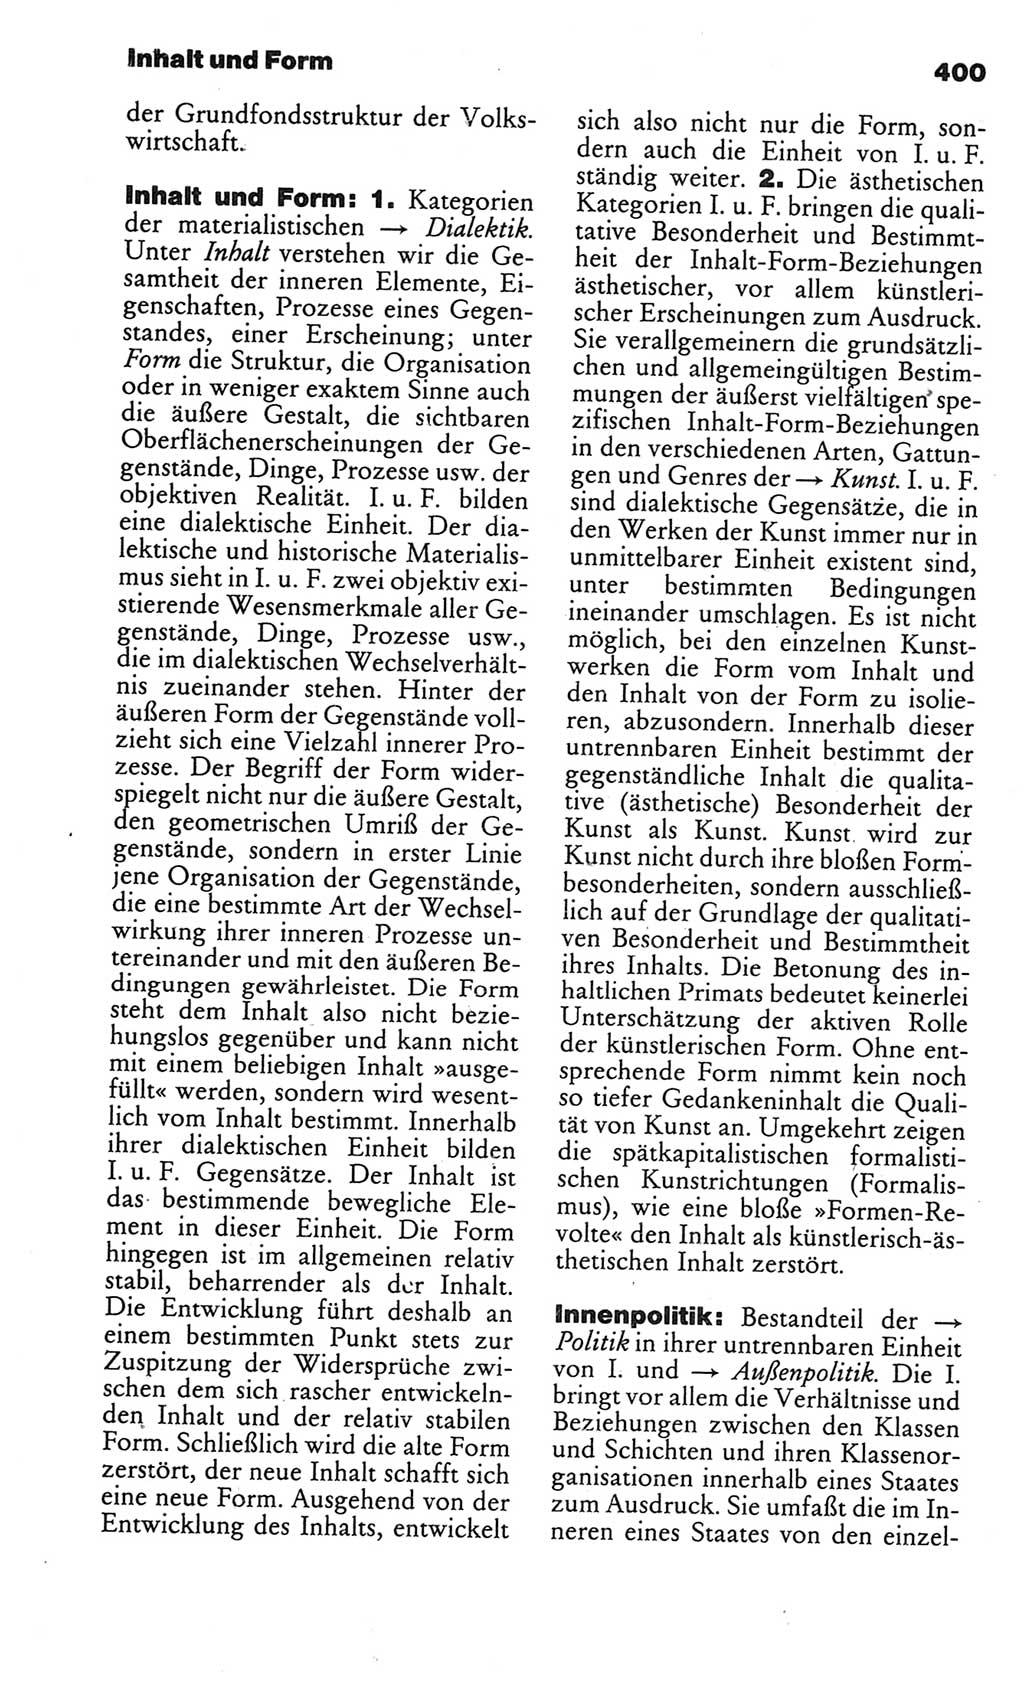 Kleines politisches Wörterbuch [Deutsche Demokratische Republik (DDR)] 1986, Seite 400 (Kl. pol. Wb. DDR 1986, S. 400)